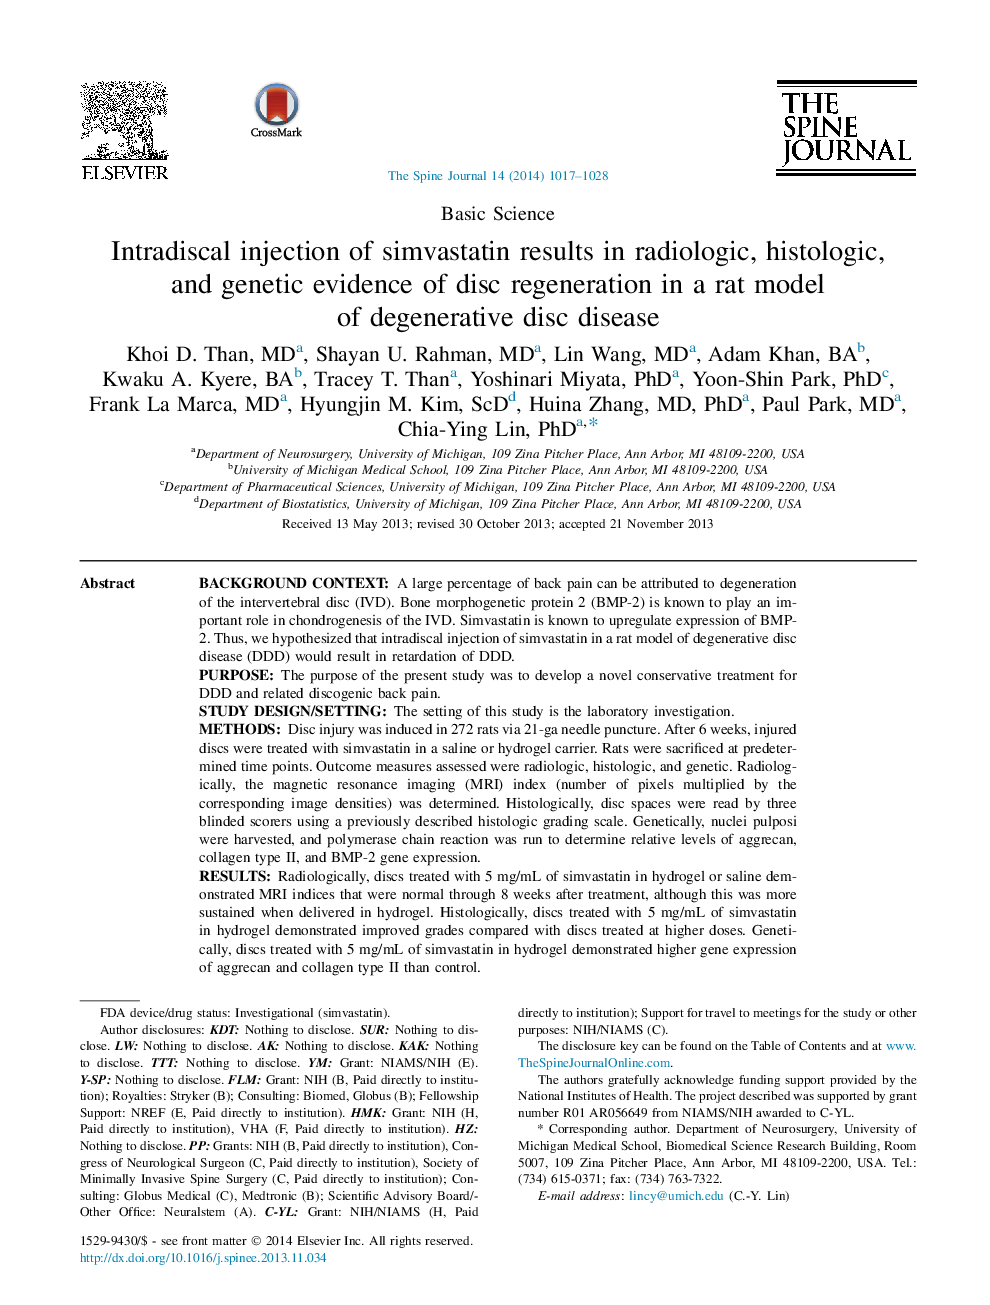 تزریق داخل تراشه سیمواستاتین موجب بروز رادیولوژیک، بافتشناسی و ژنتیک در بازسازی دیسک در یک مدل رت از بیماری دیسک دژنراتیو می شود 